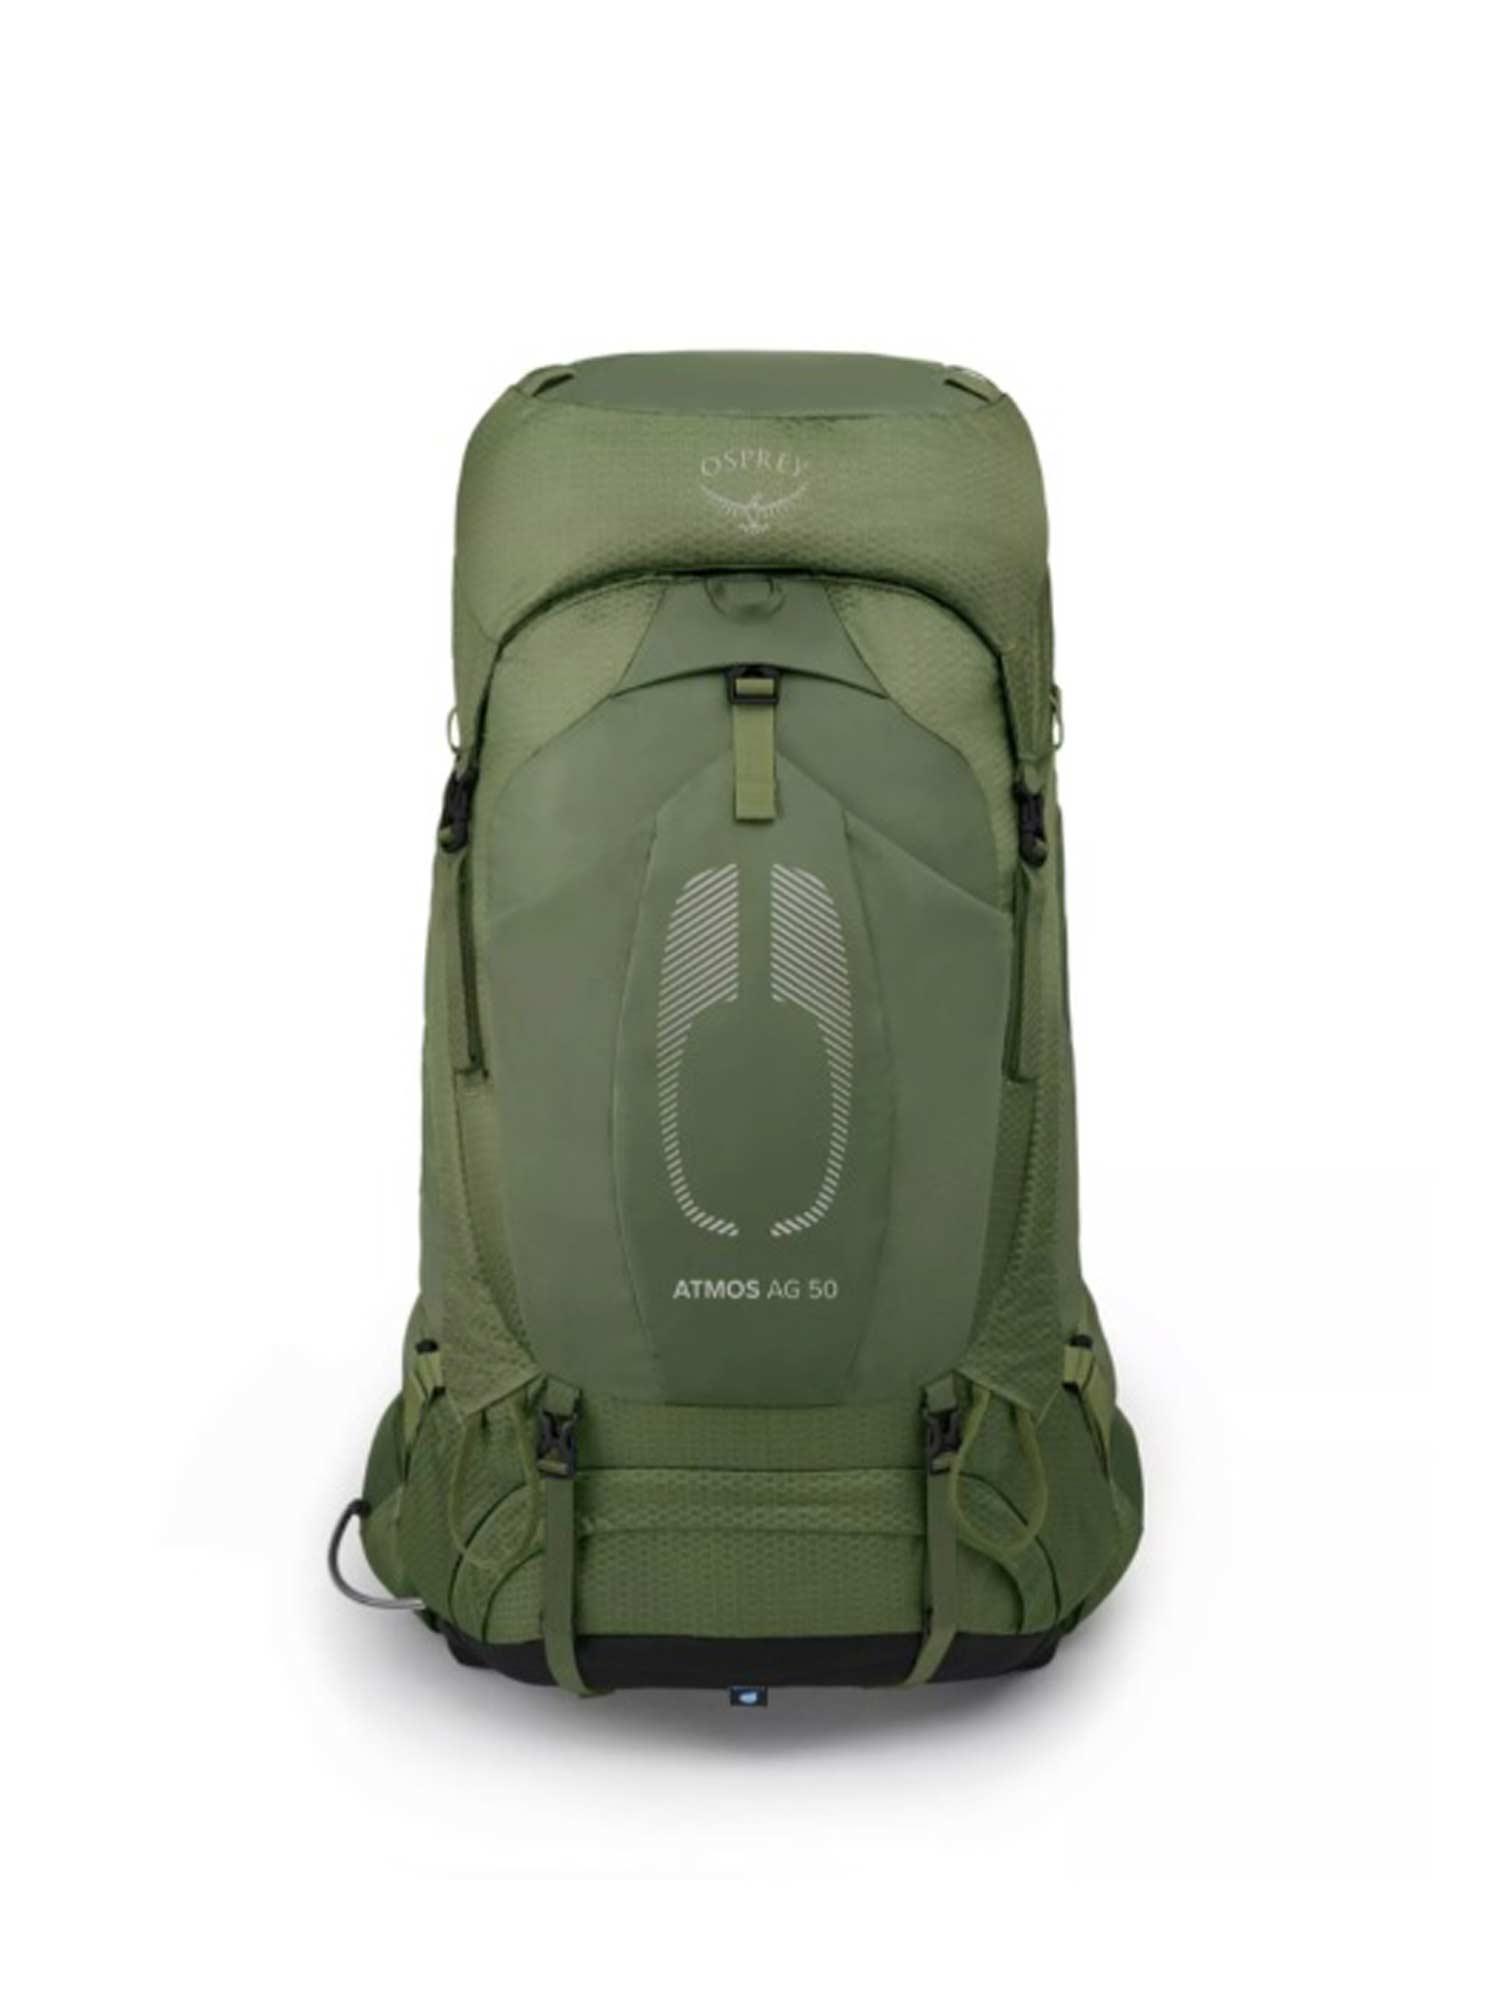 Selected image for OSPREY Muški ranac za planinarenje Atmos AG 50 Backpack maslina